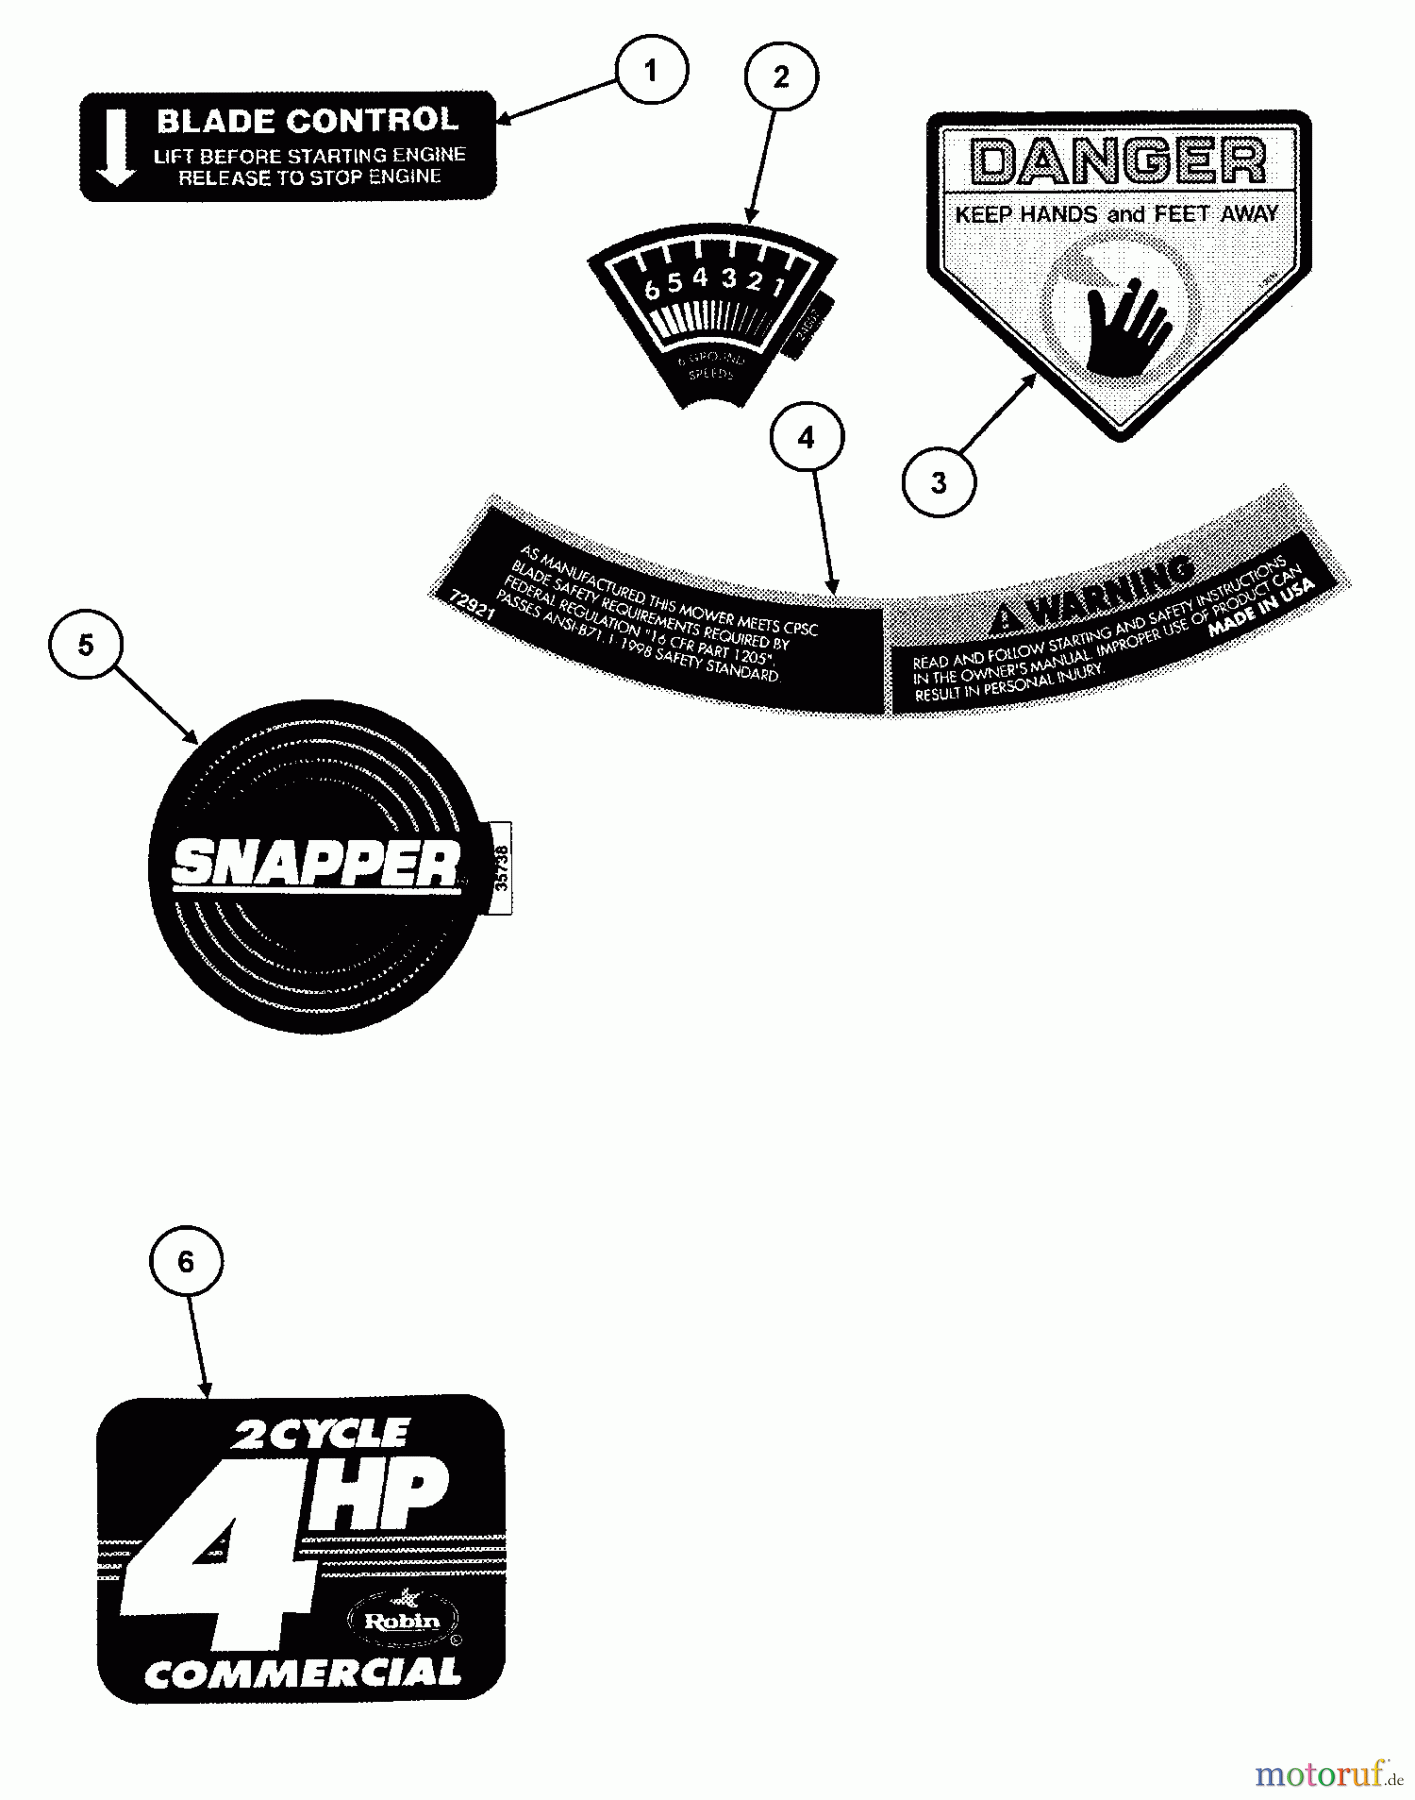  Snapper Rasenmäher CP215017HV (84907) - Snapper 21